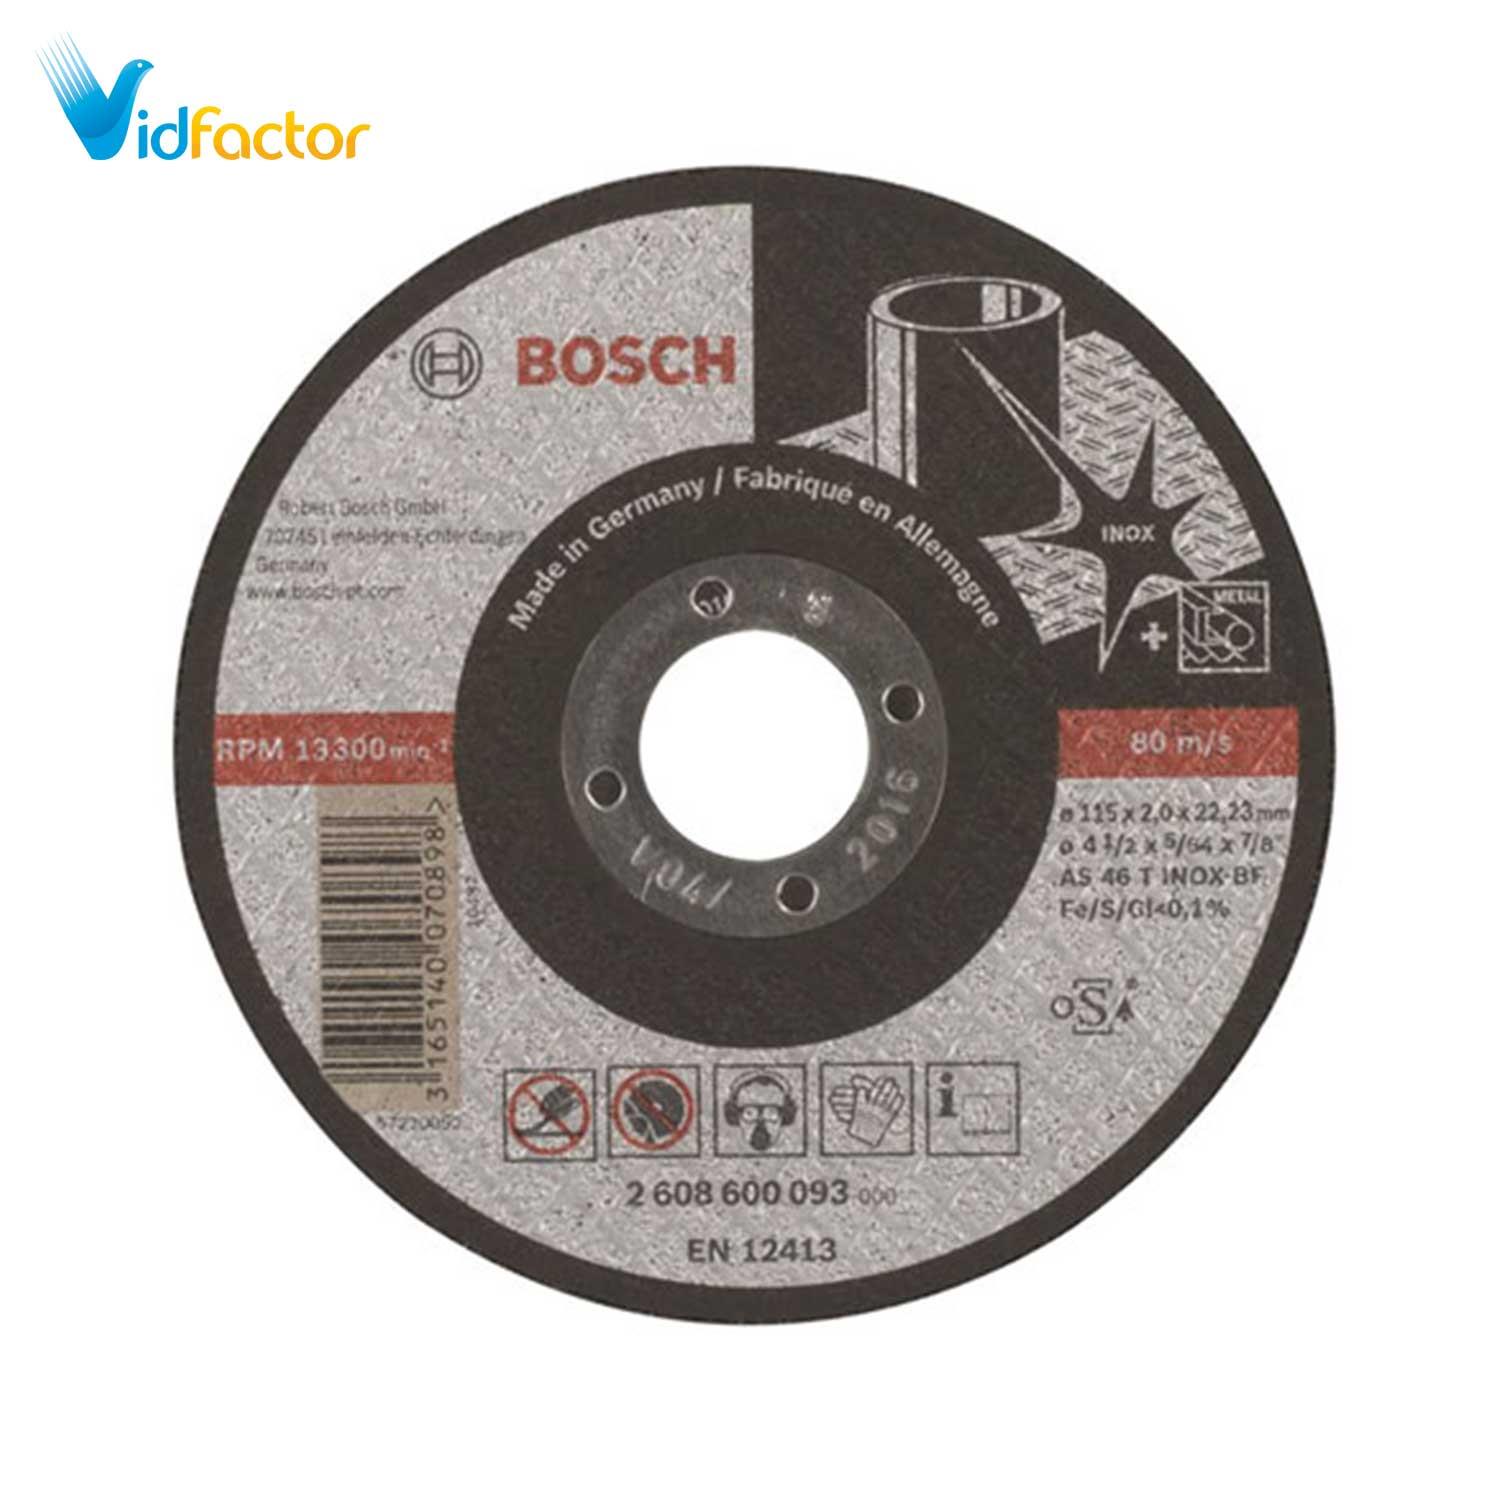 صفحه برش تخت استیل Bosch D115x2x22.2mm 2608600093